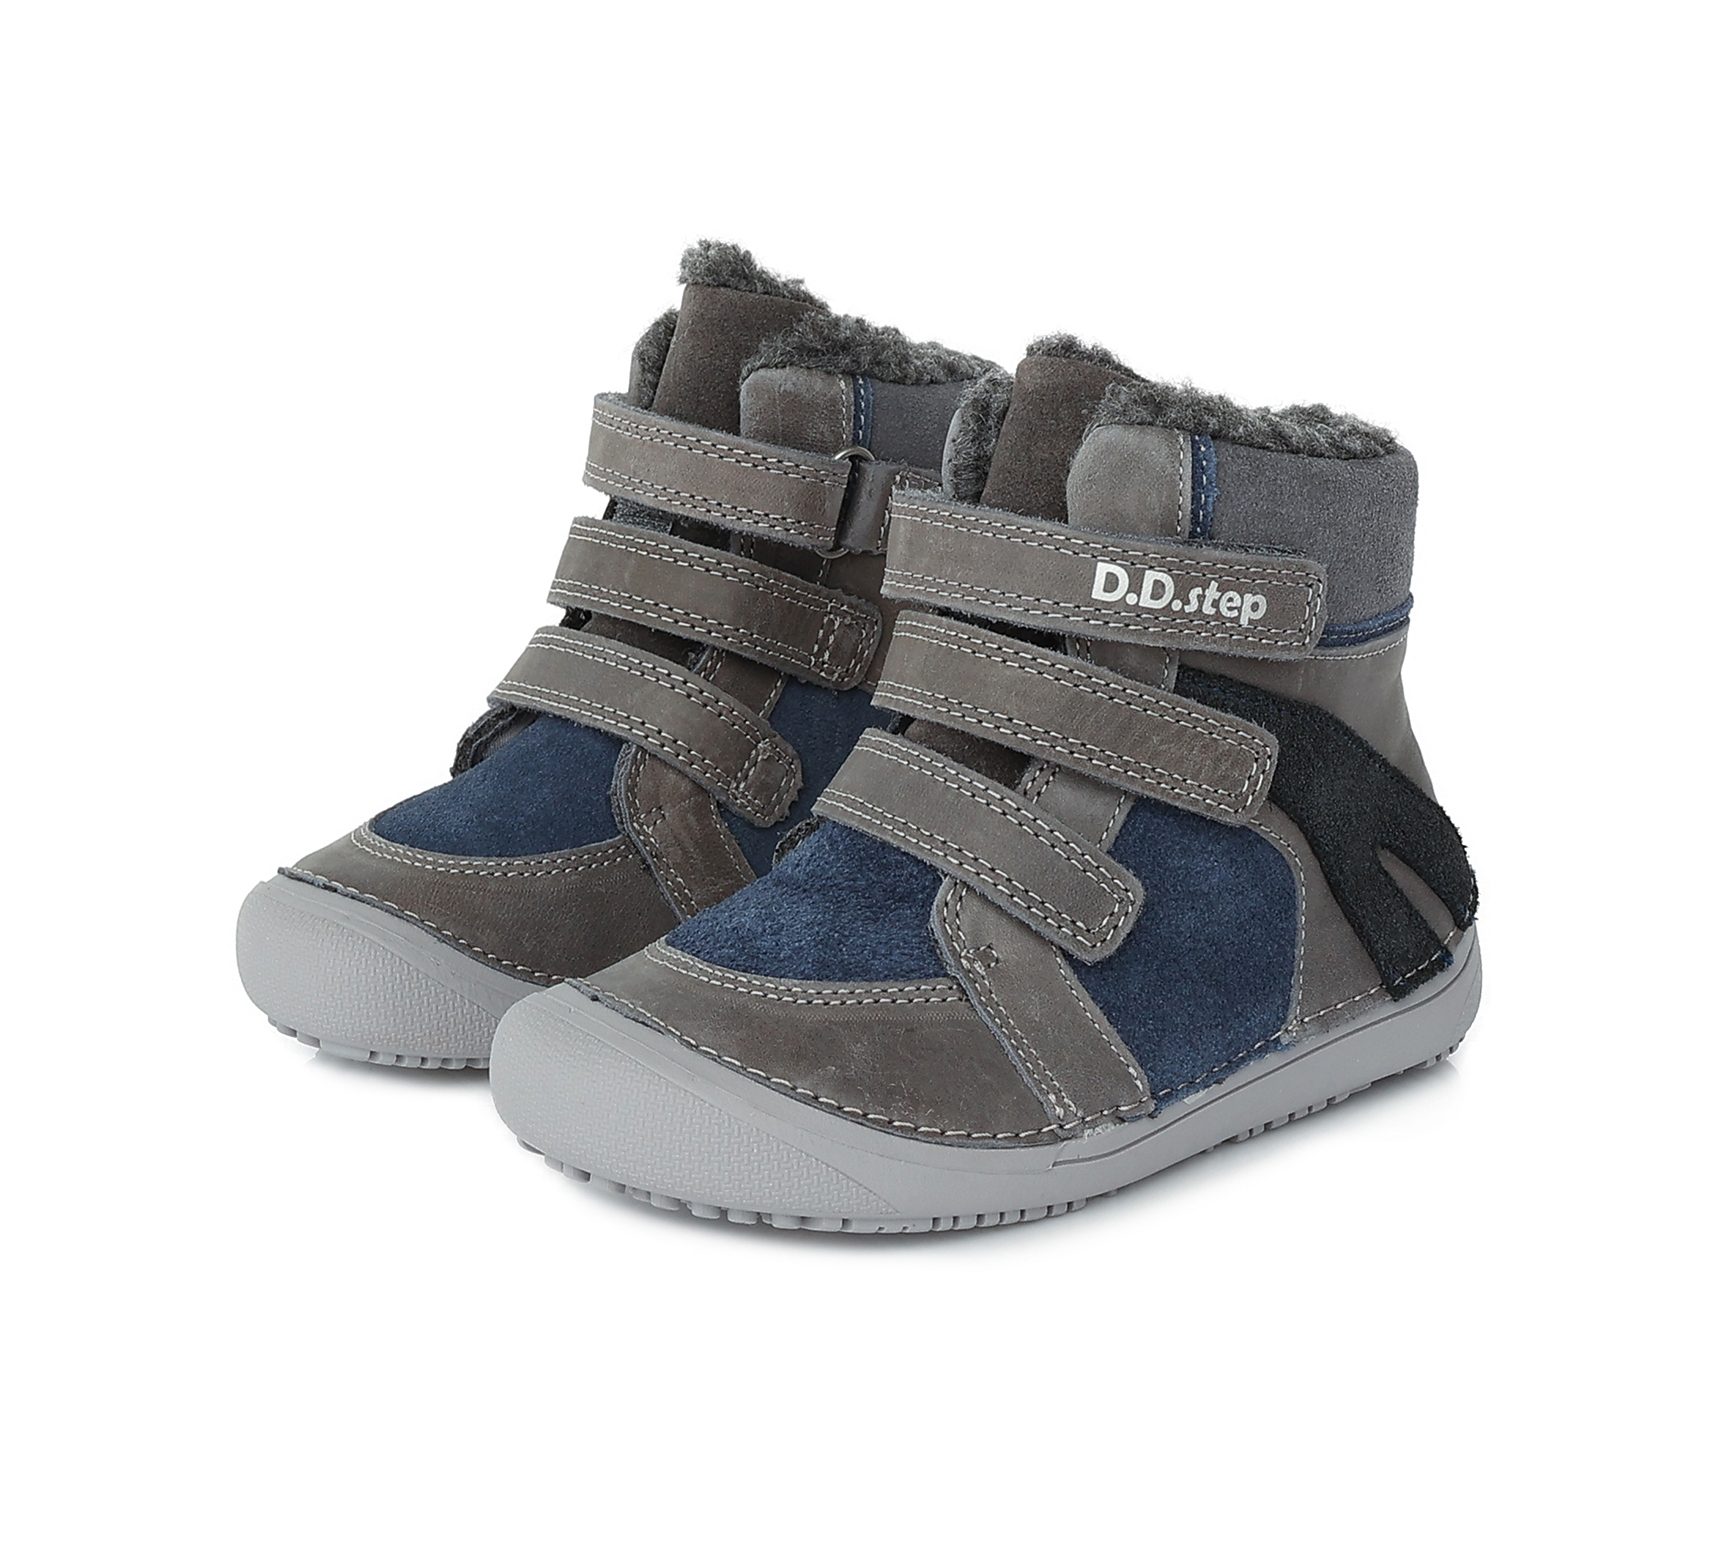 D.D.Step winter boots Dark Grey